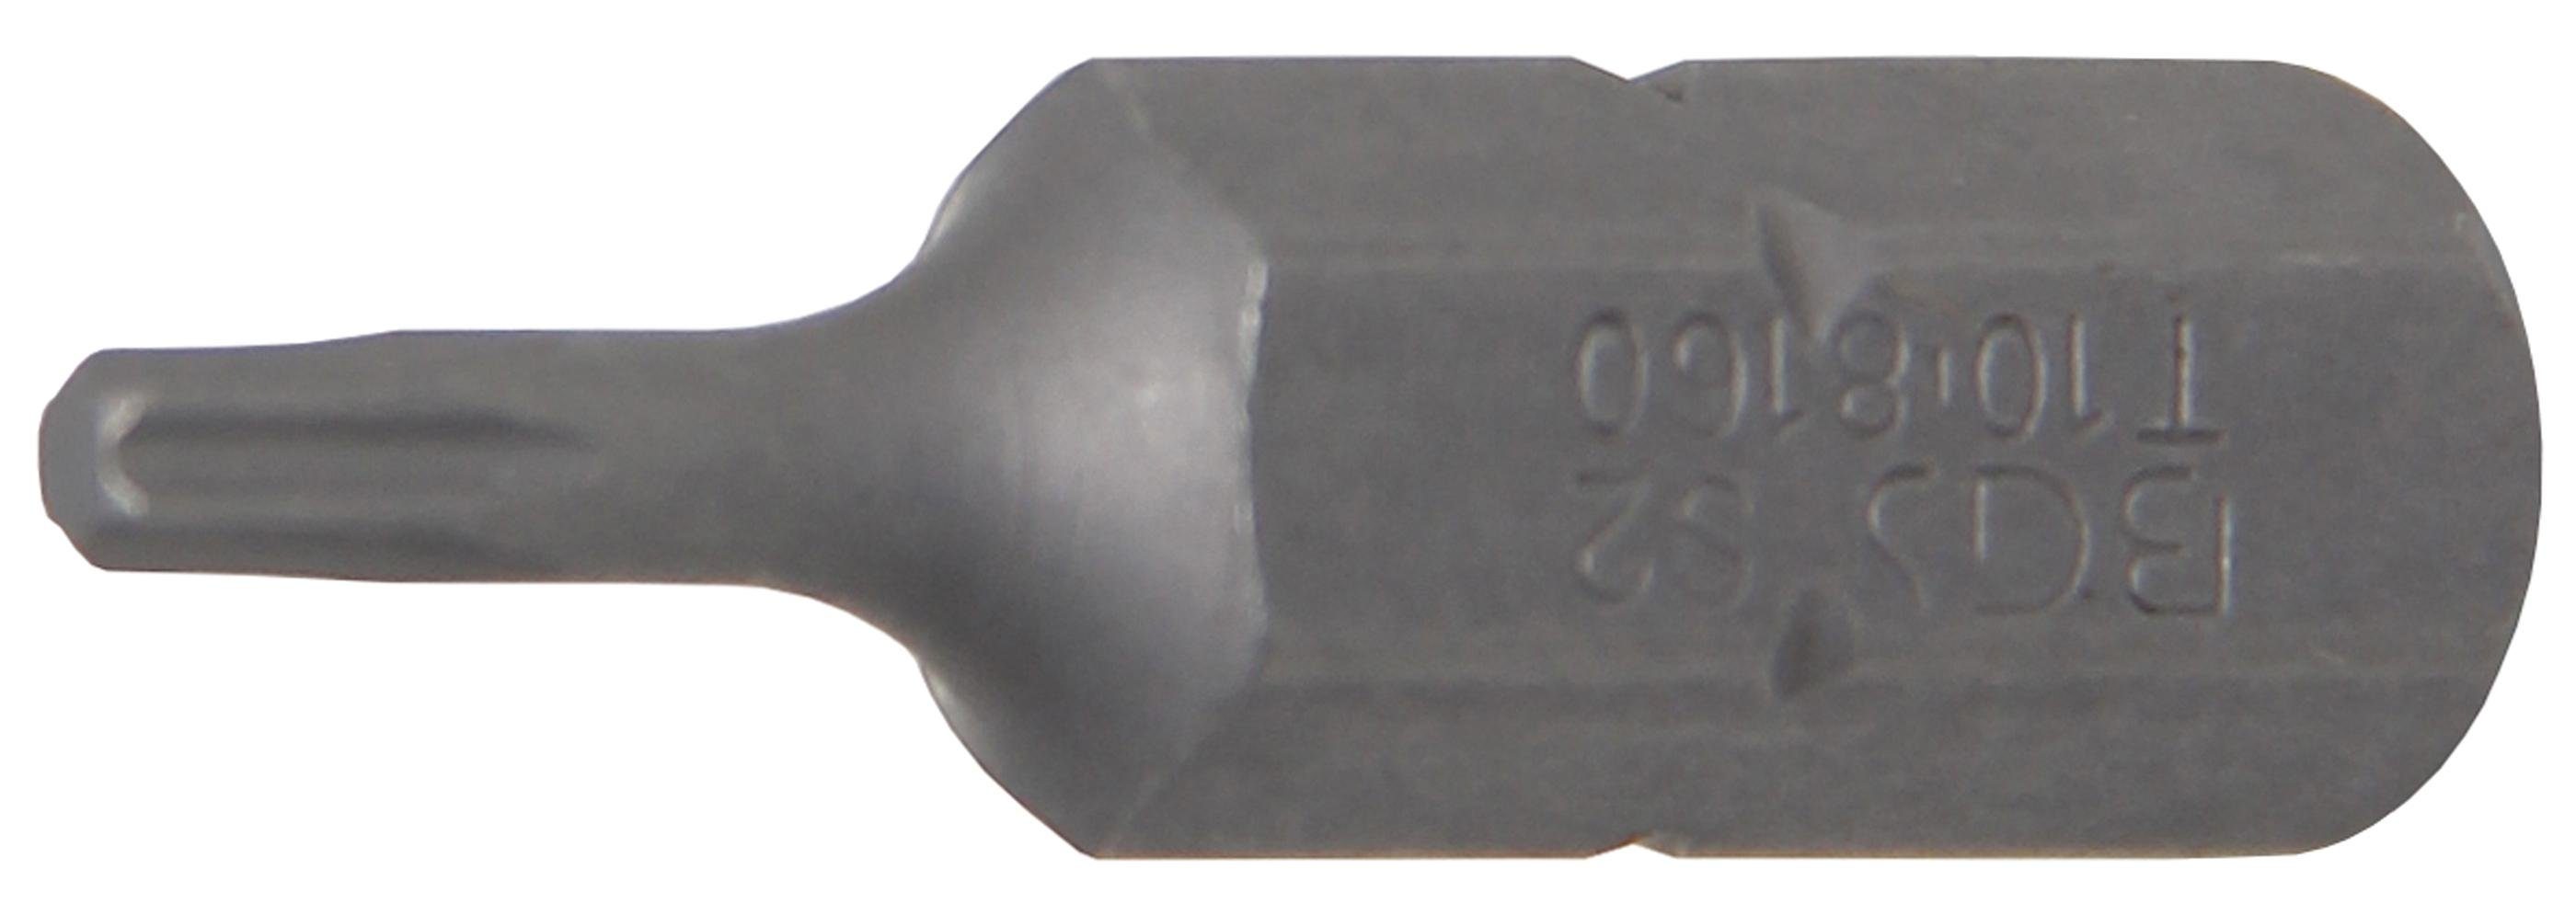 T-Profil technic Bit, T10 BGS (5/16), Außensechskant Torx) mm 8 Bit-Schraubendreher (für Antrieb